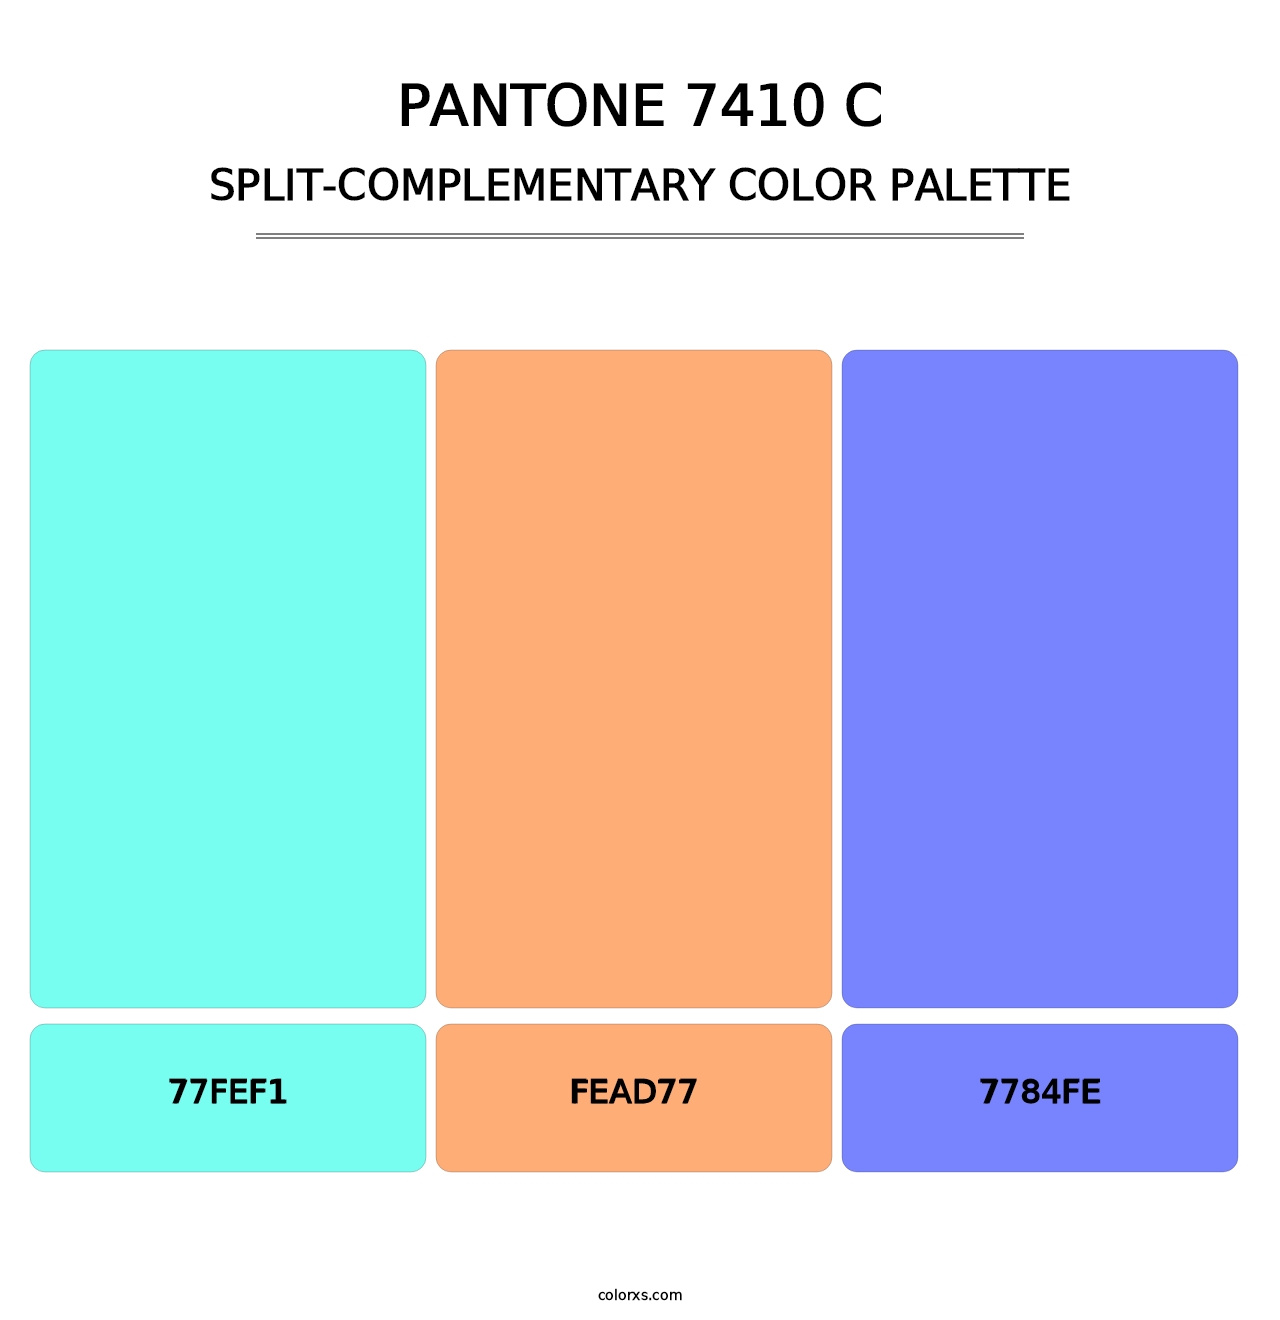 PANTONE 7410 C - Split-Complementary Color Palette